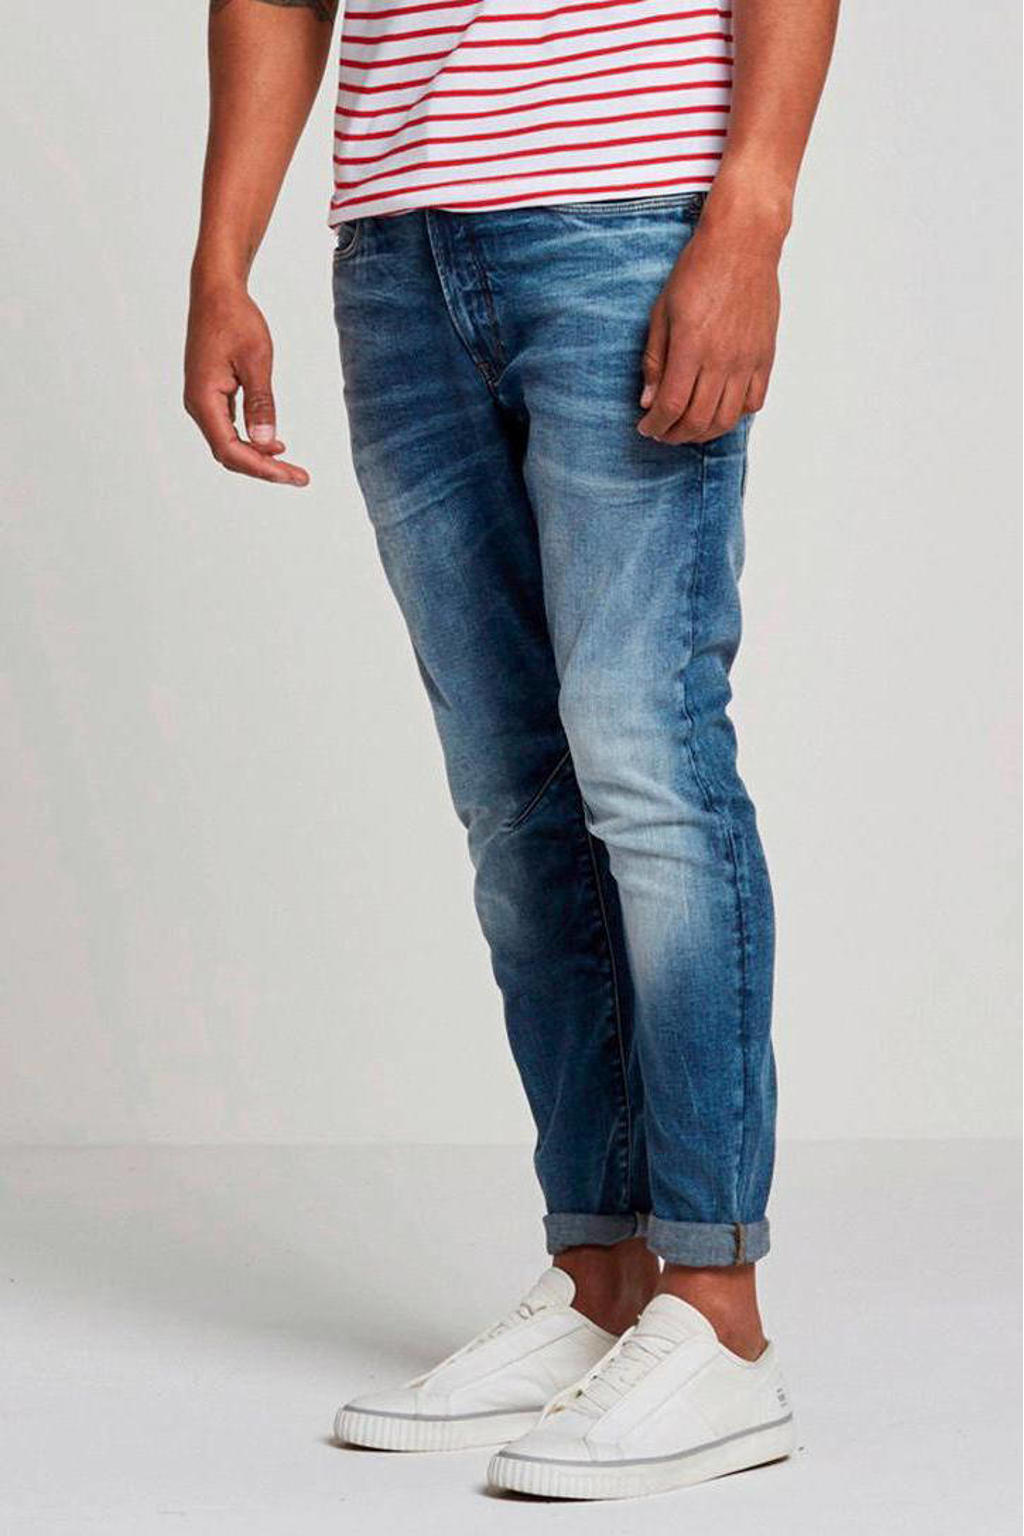 G-Star RAW D-staq slim fit jeans 071/medium aged